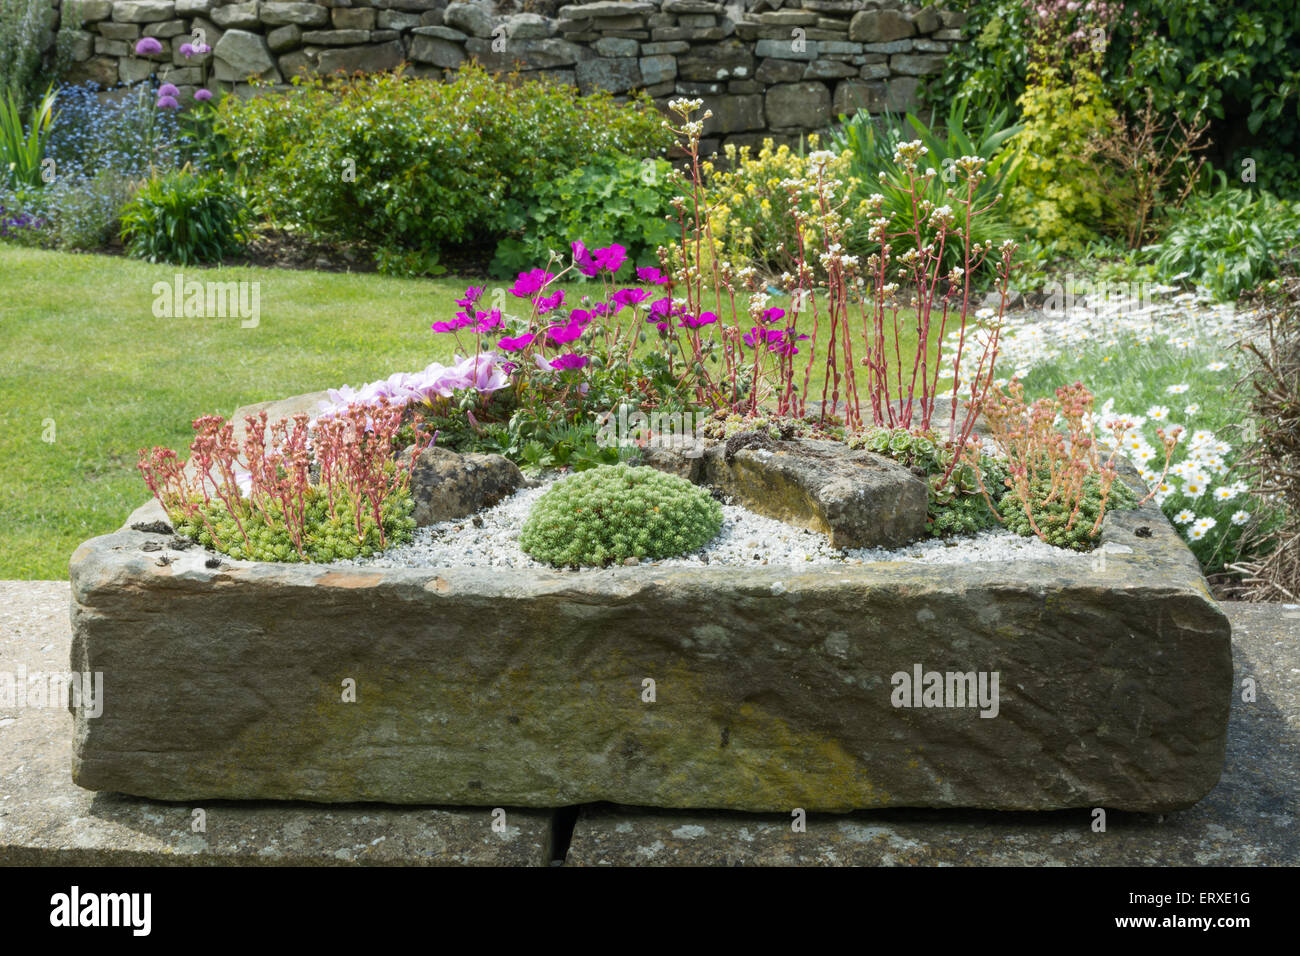 Alpines plantés dans un jardin de pierres évier Banque D'Images